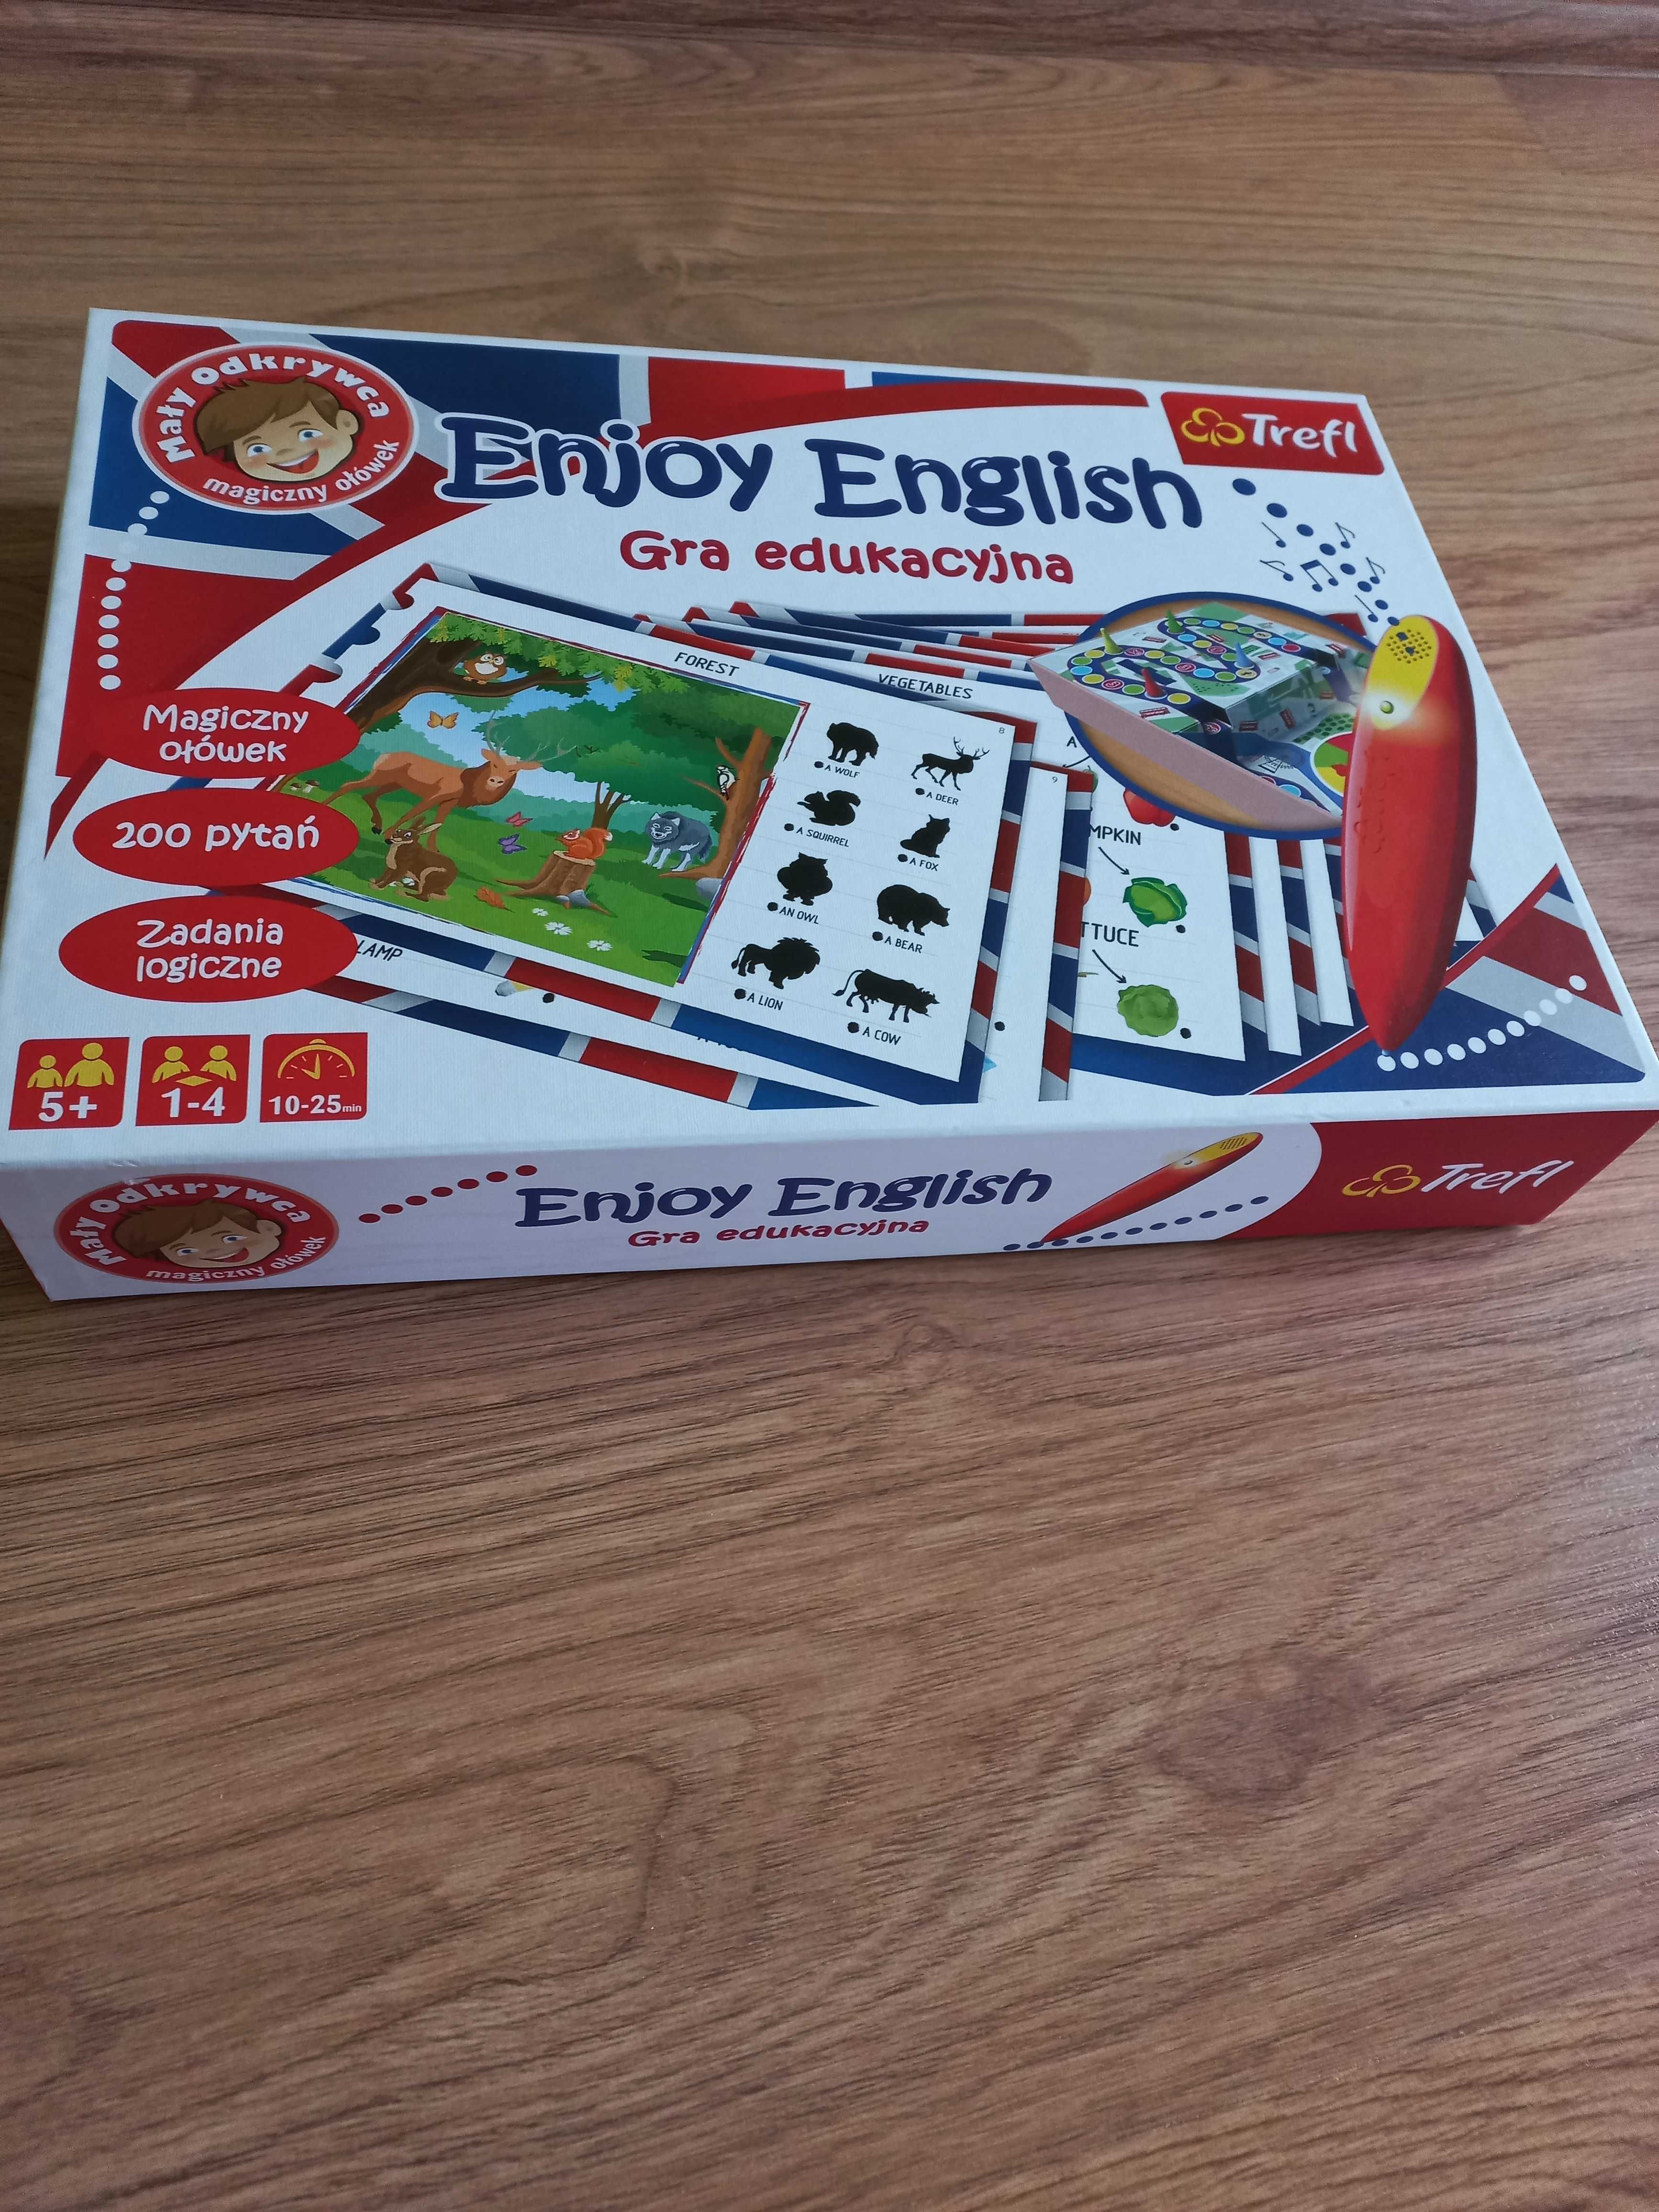 Gra edukacyjna Angielski Enjoy English, Trefl, na Dzień Dziecka